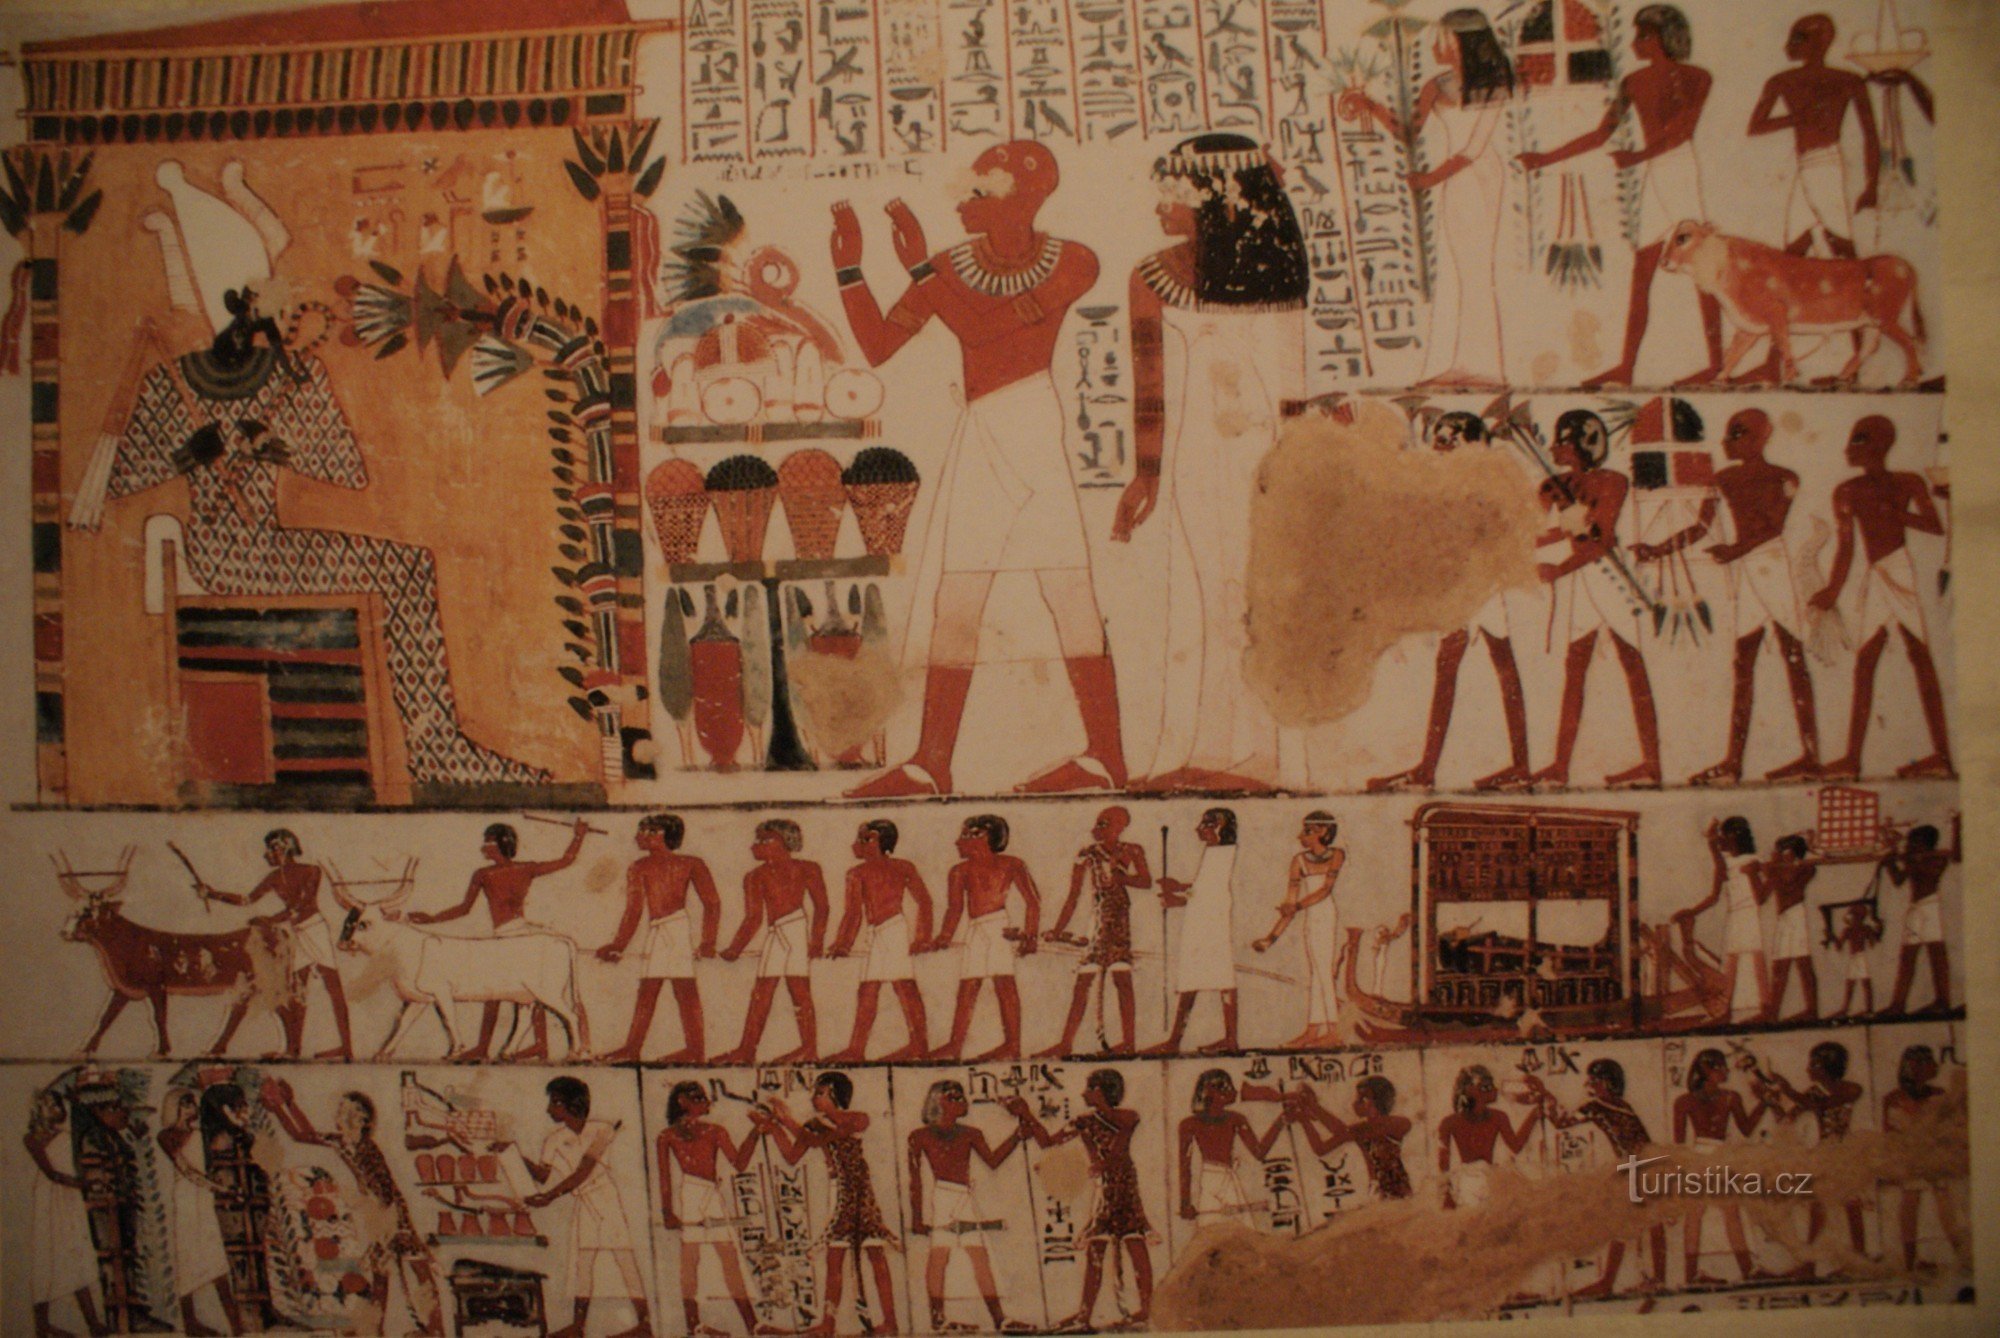 Bạn không cần phải đi đến tận Ai Cập để tìm Tutankhamun hay lăng mộ và kho báu của ông ta (Brno 2009)